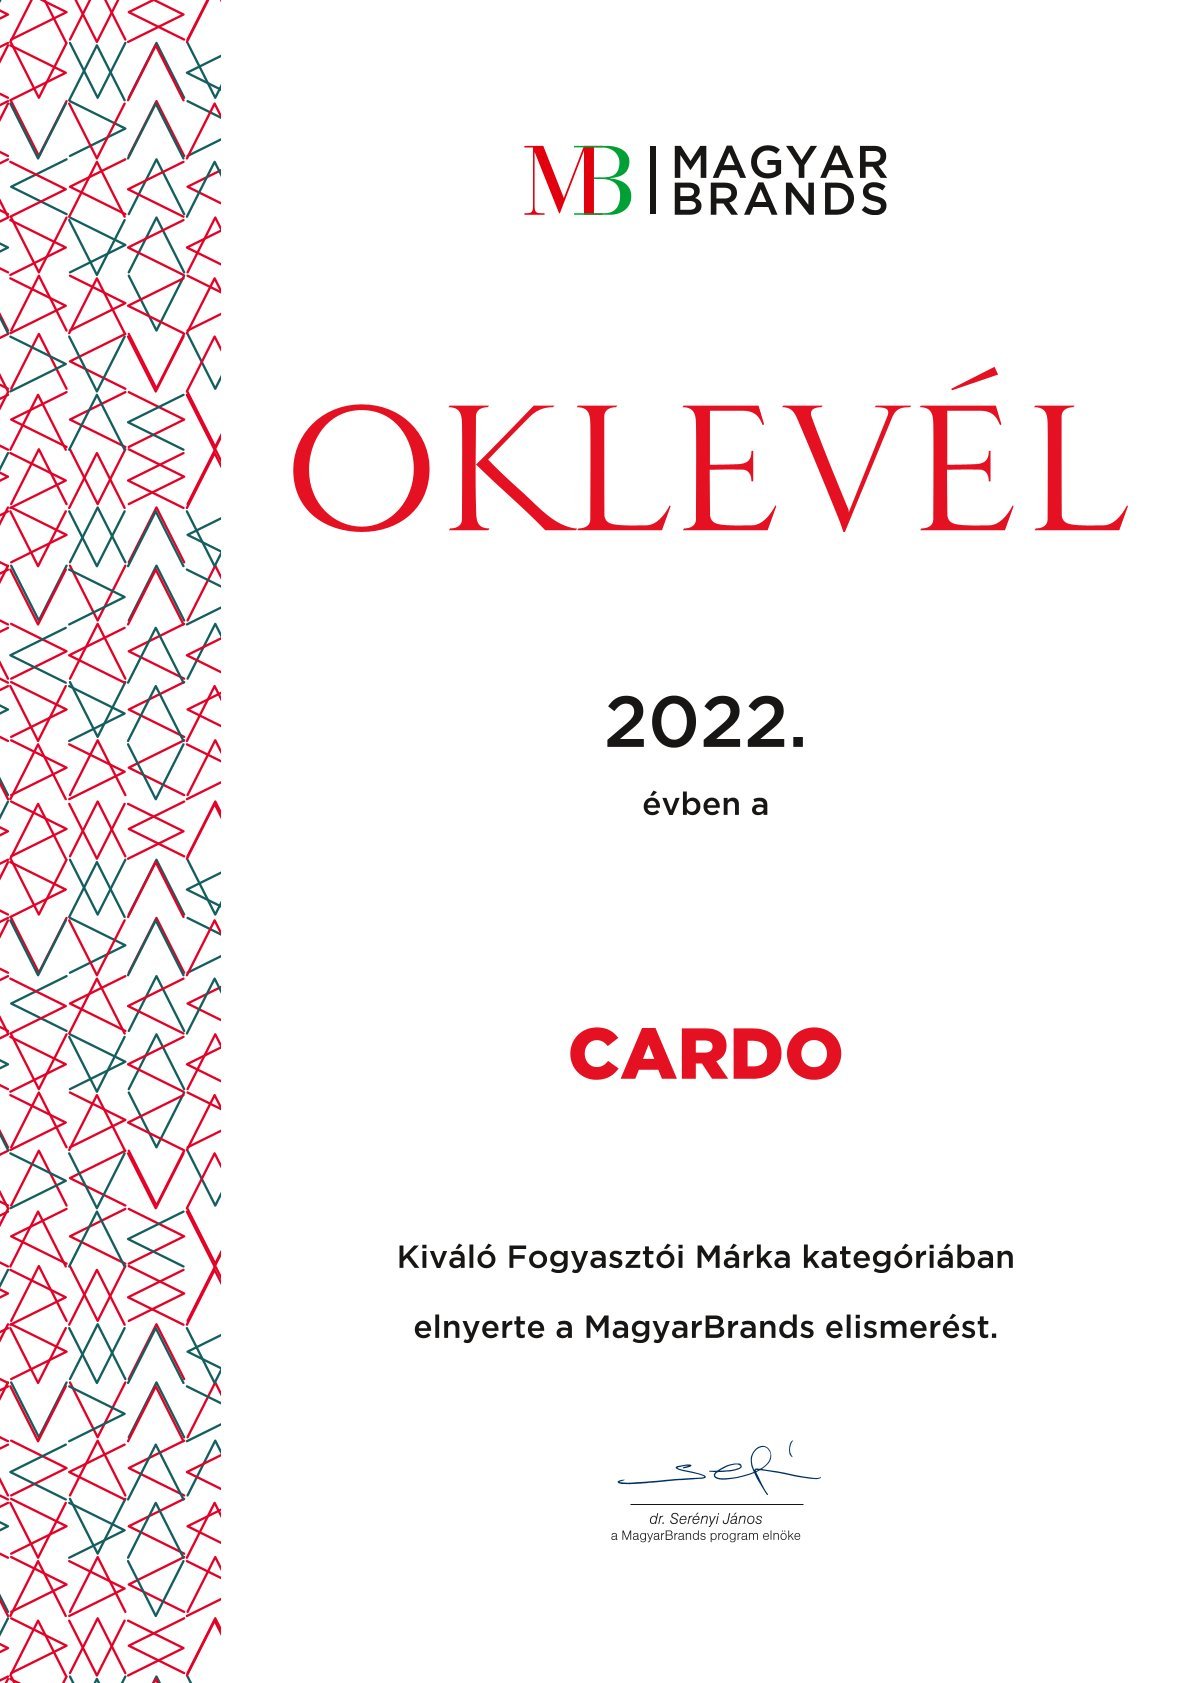 CARDO_MB_oklevel_2022_fogyasztoi